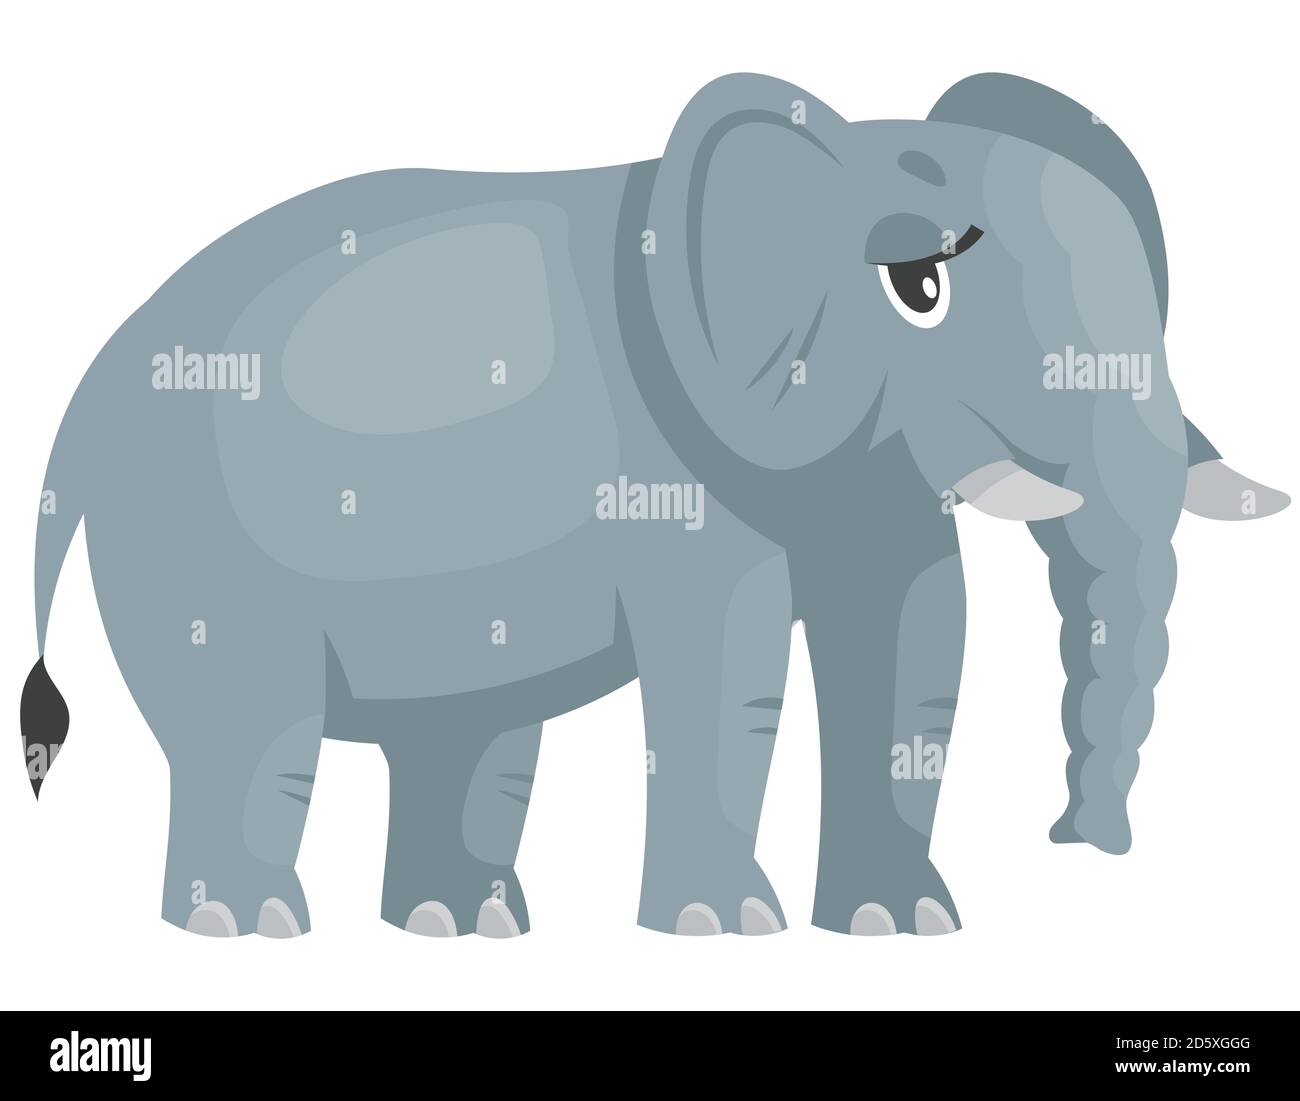 Stehende weibliche Elefant drei Viertel Ansicht. Afrikanisches Tier im Cartoon-Stil. Stock Vektor